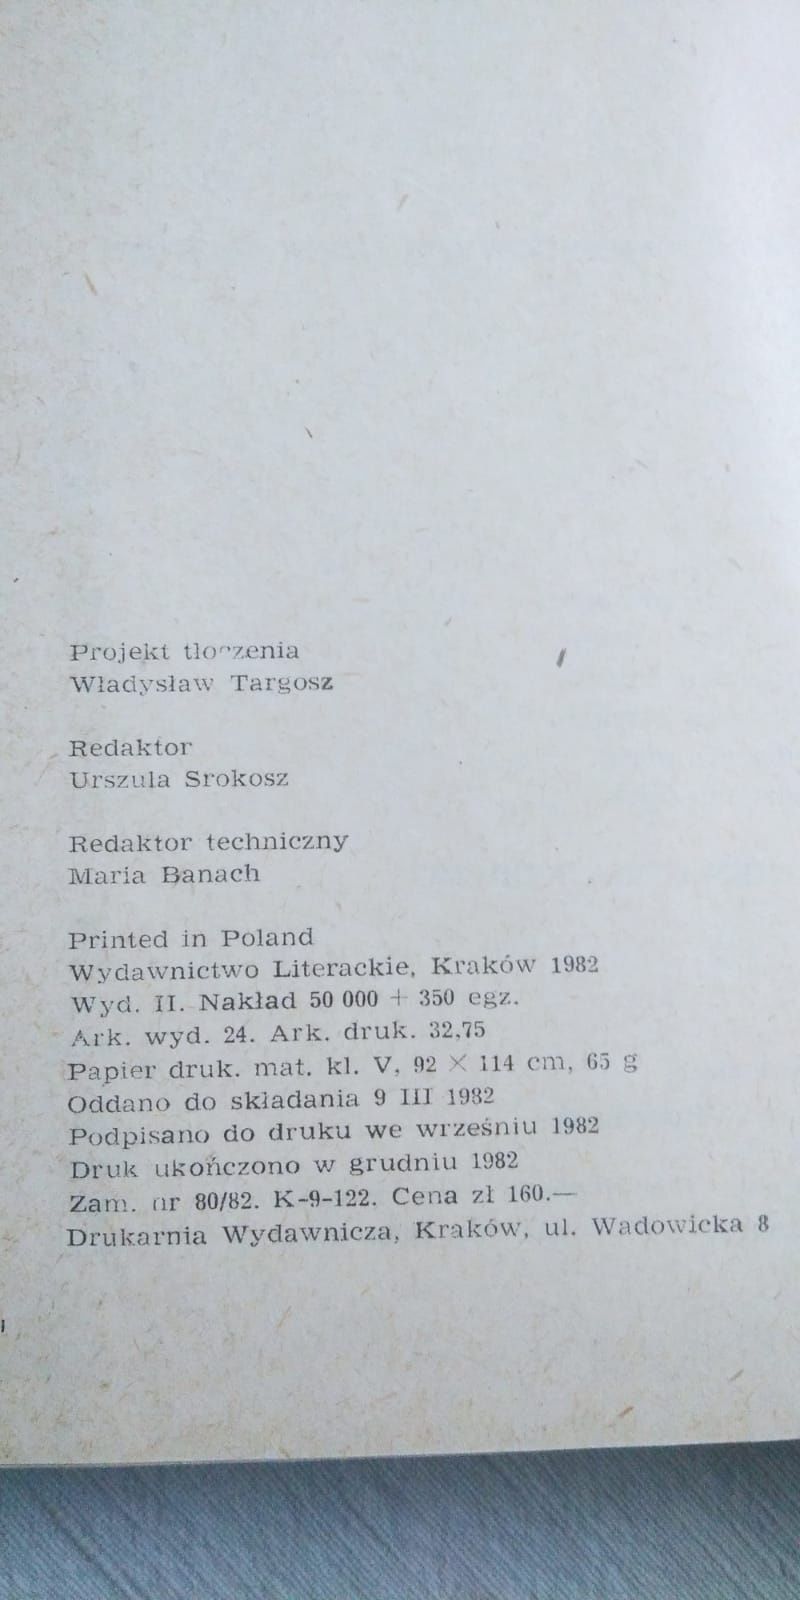 Książka z 1982 roku Lem "Dzienniki gwiazdowe"